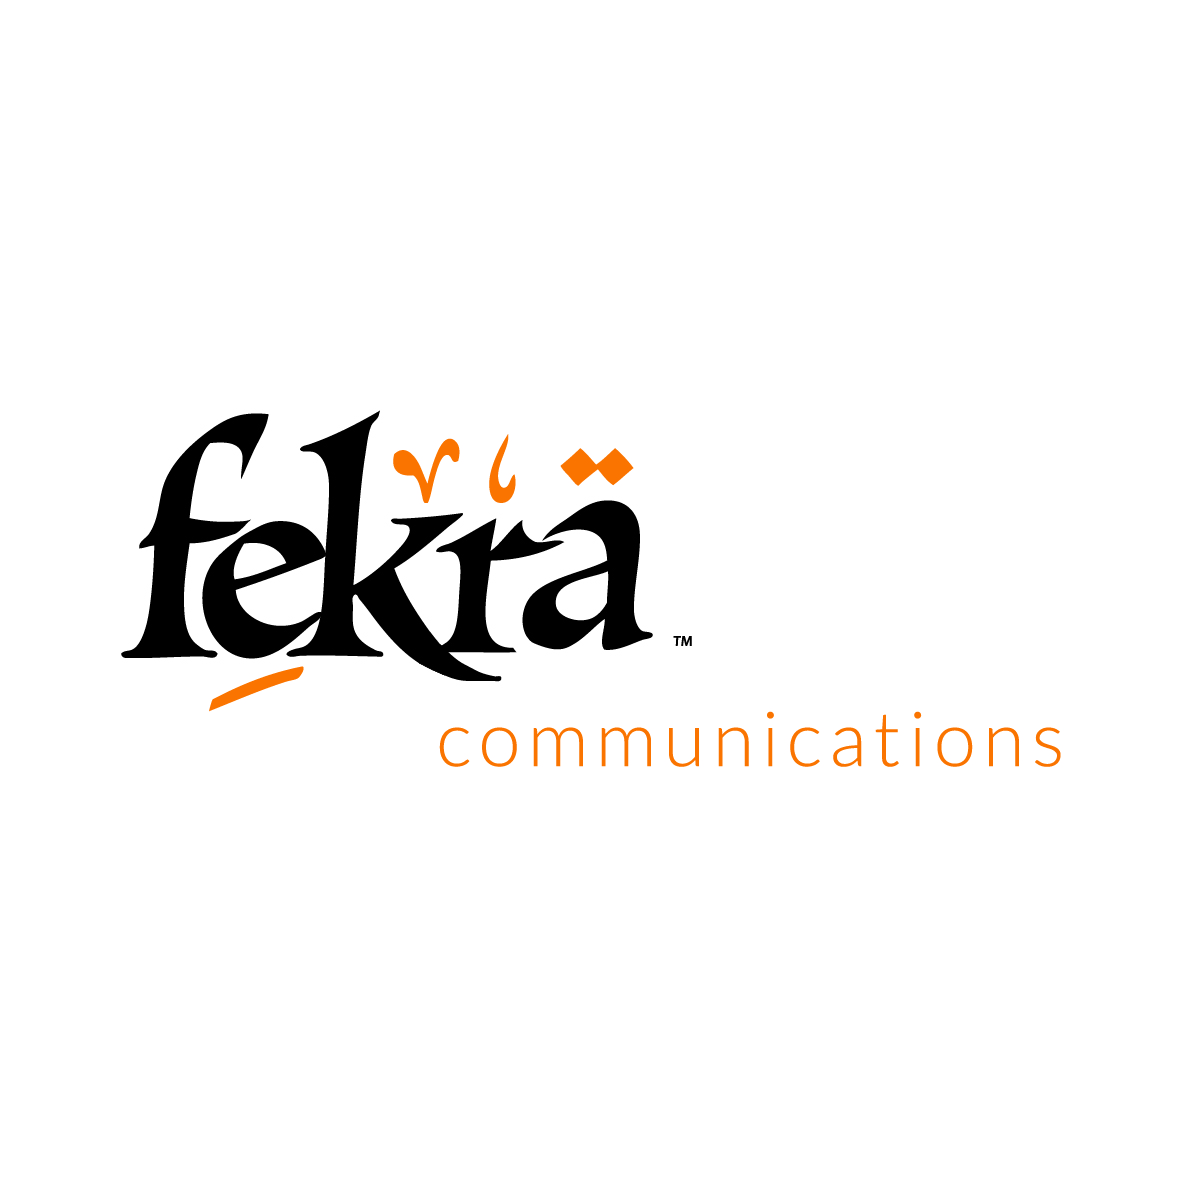 Fekra Communications